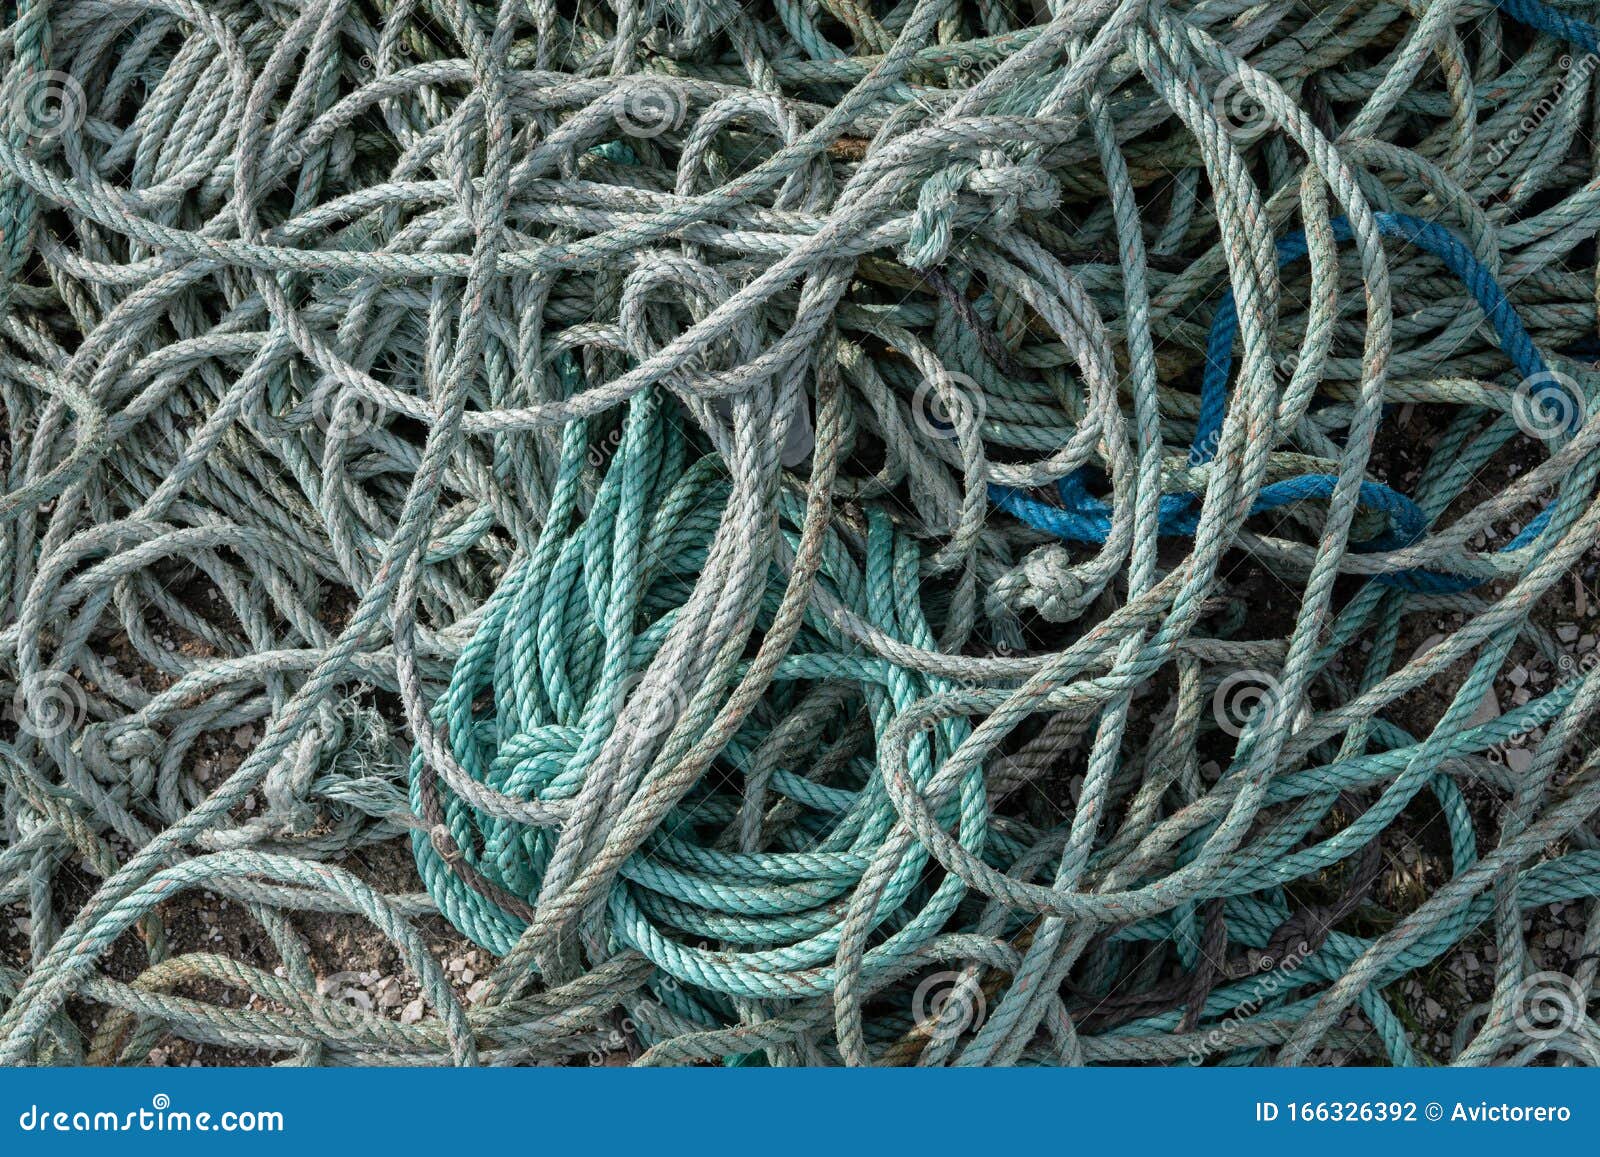 Twisted Nylon Rope Background Stock Photo - Image of marine